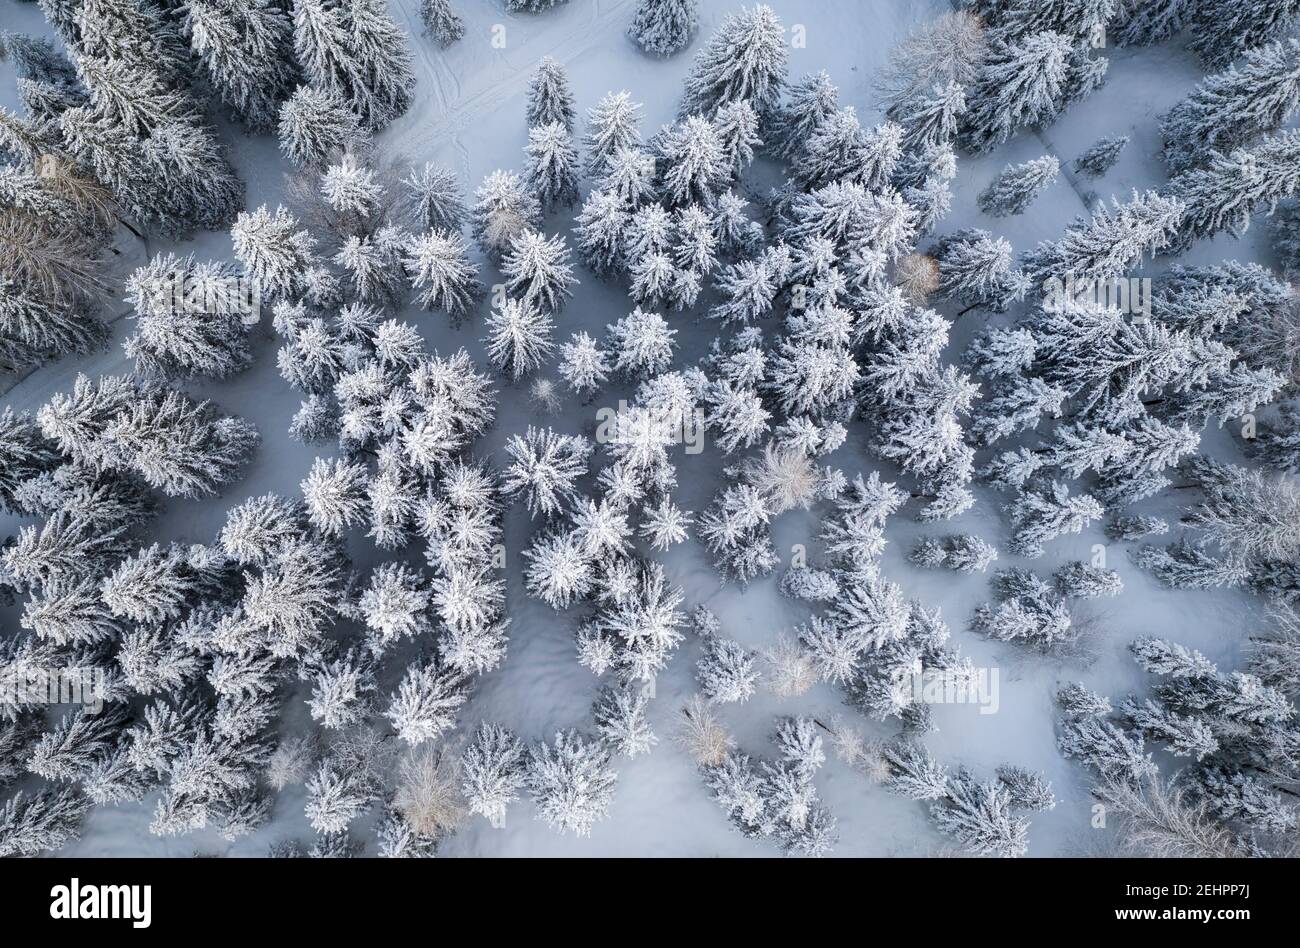 Vue aérienne d'un groupe d'arbres couverts de neige au col de Presolana. Colere, Val Seriana, Bergame district, Lombardie, Italie. Banque D'Images